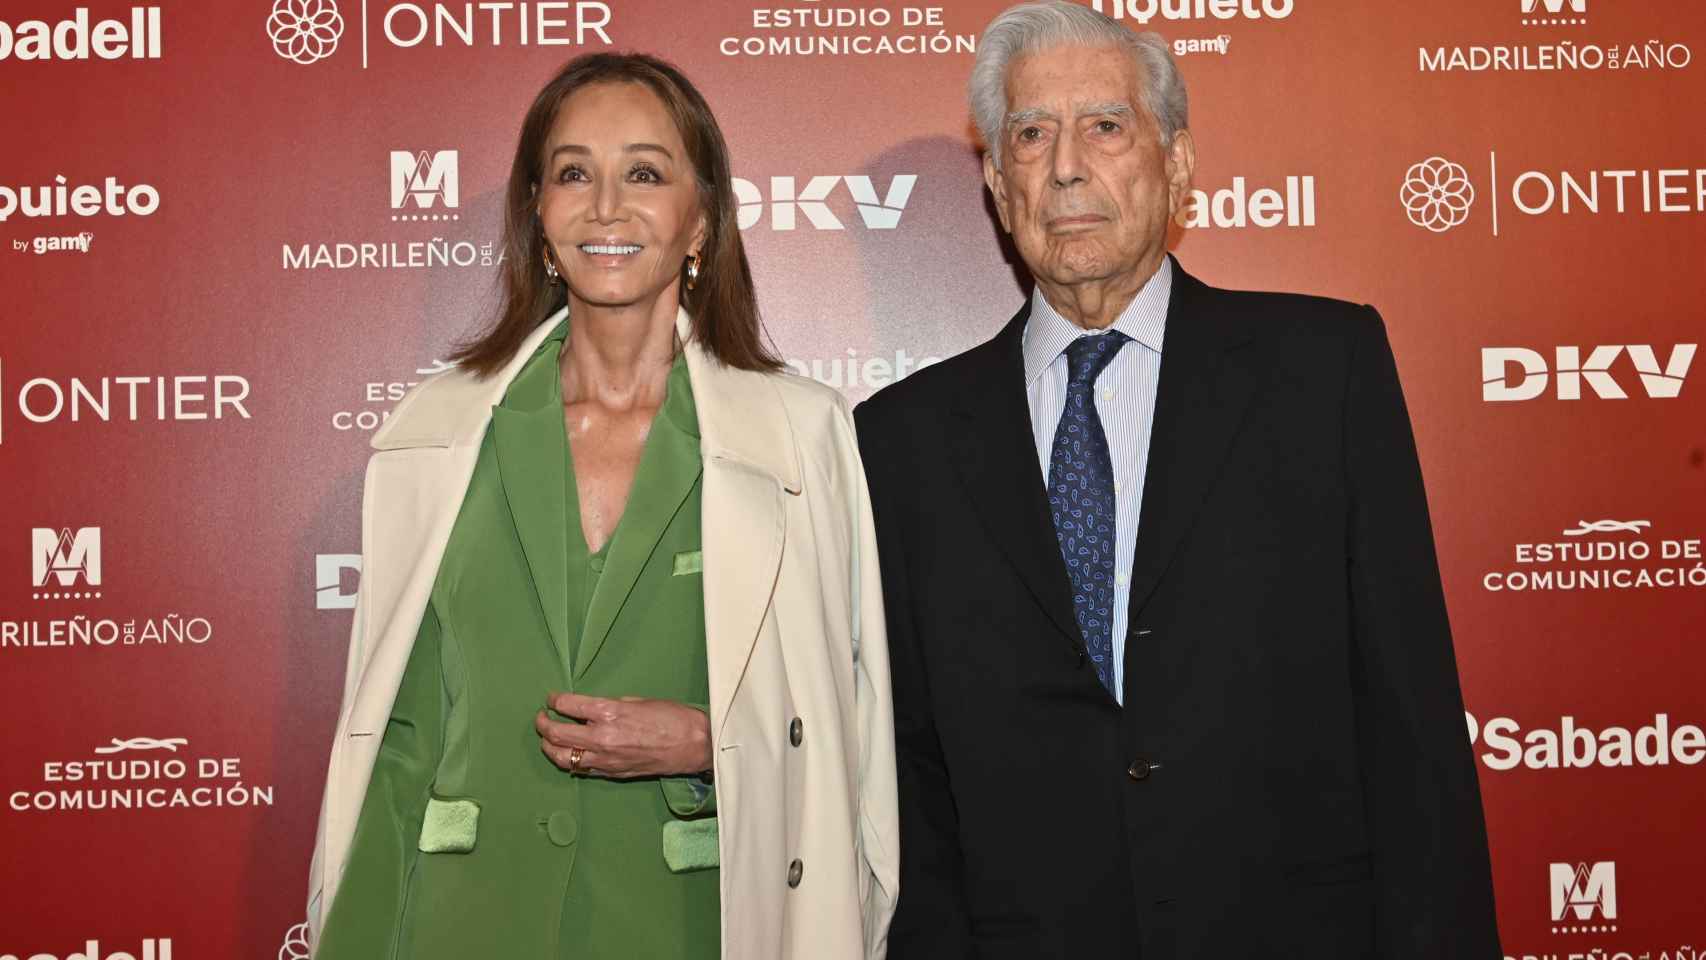 Isabel Preysler acompañaba a Mario Vargas Llosa a recibir el premio 'Madrileño del año'.